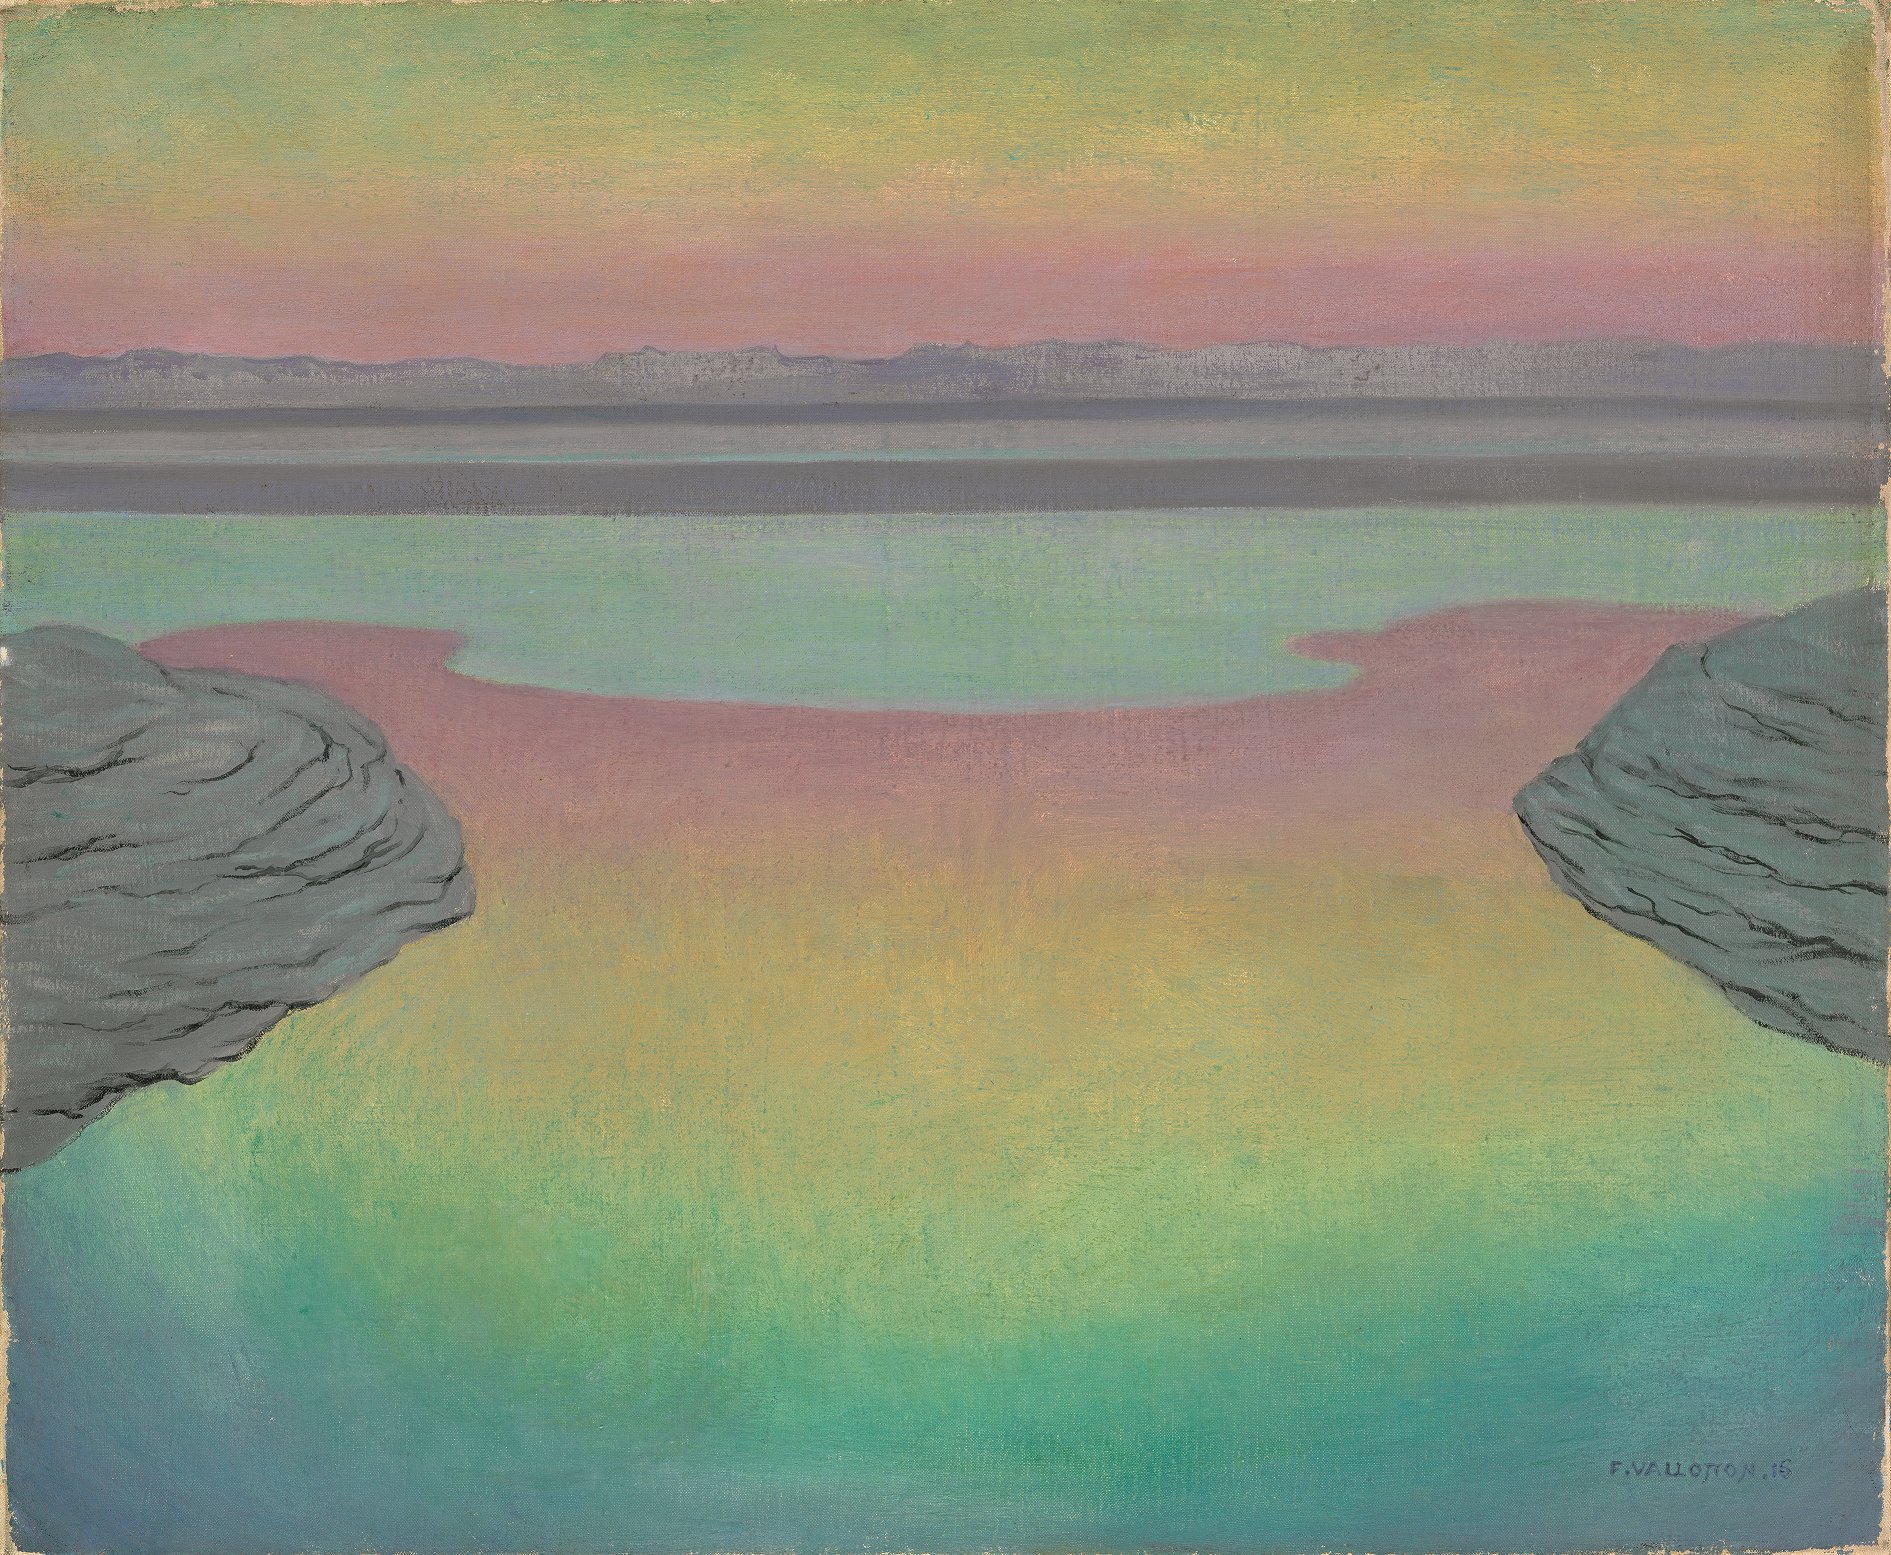 Maré alta sob a luz vespertina by Félix Vallotton - 1915 - 61 × 73 cm 